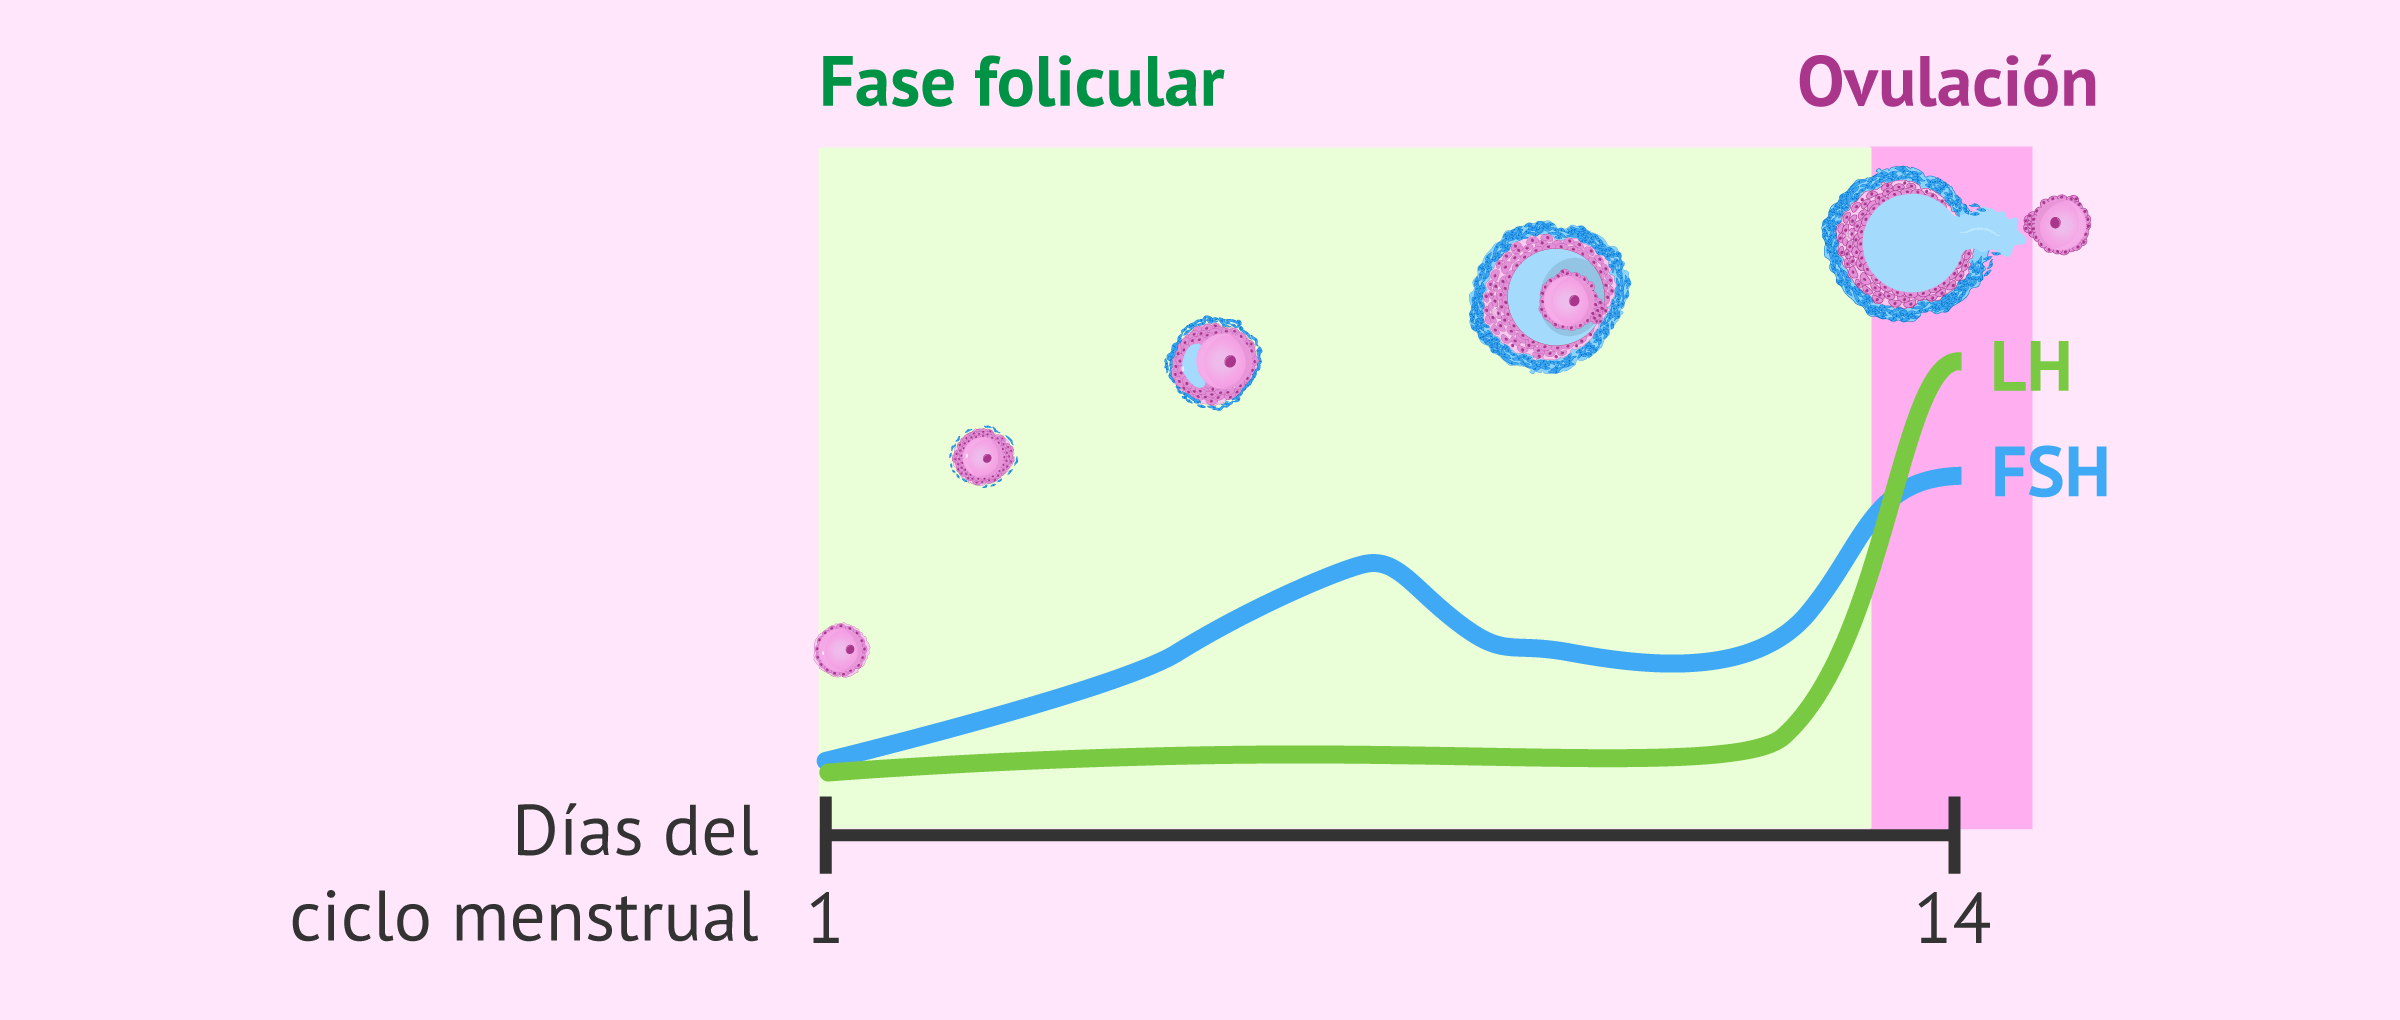 ¿Cuál es la duración de la fase folicular?